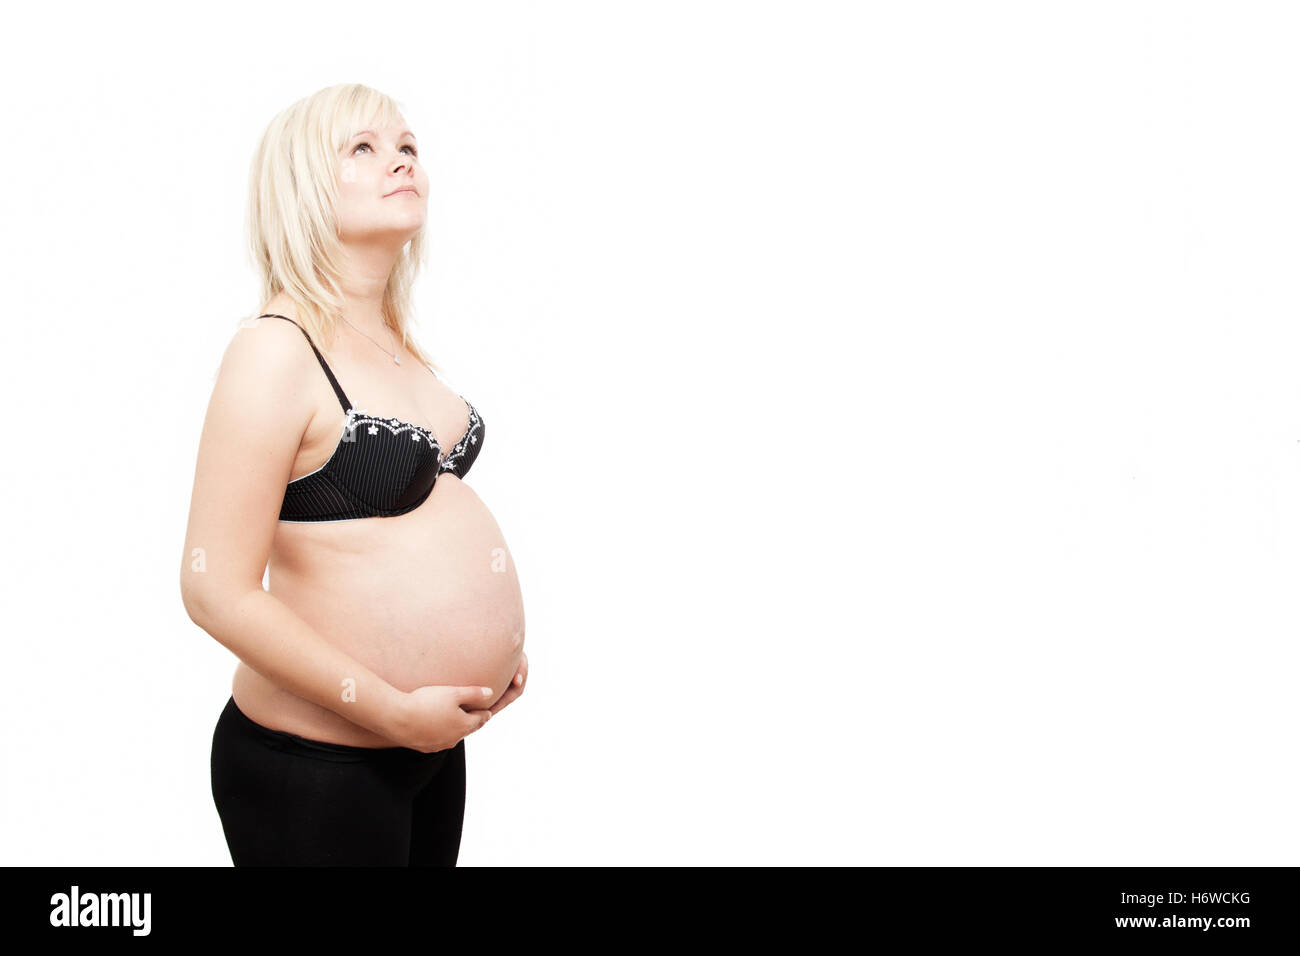 baby pregnancy Stock Photo